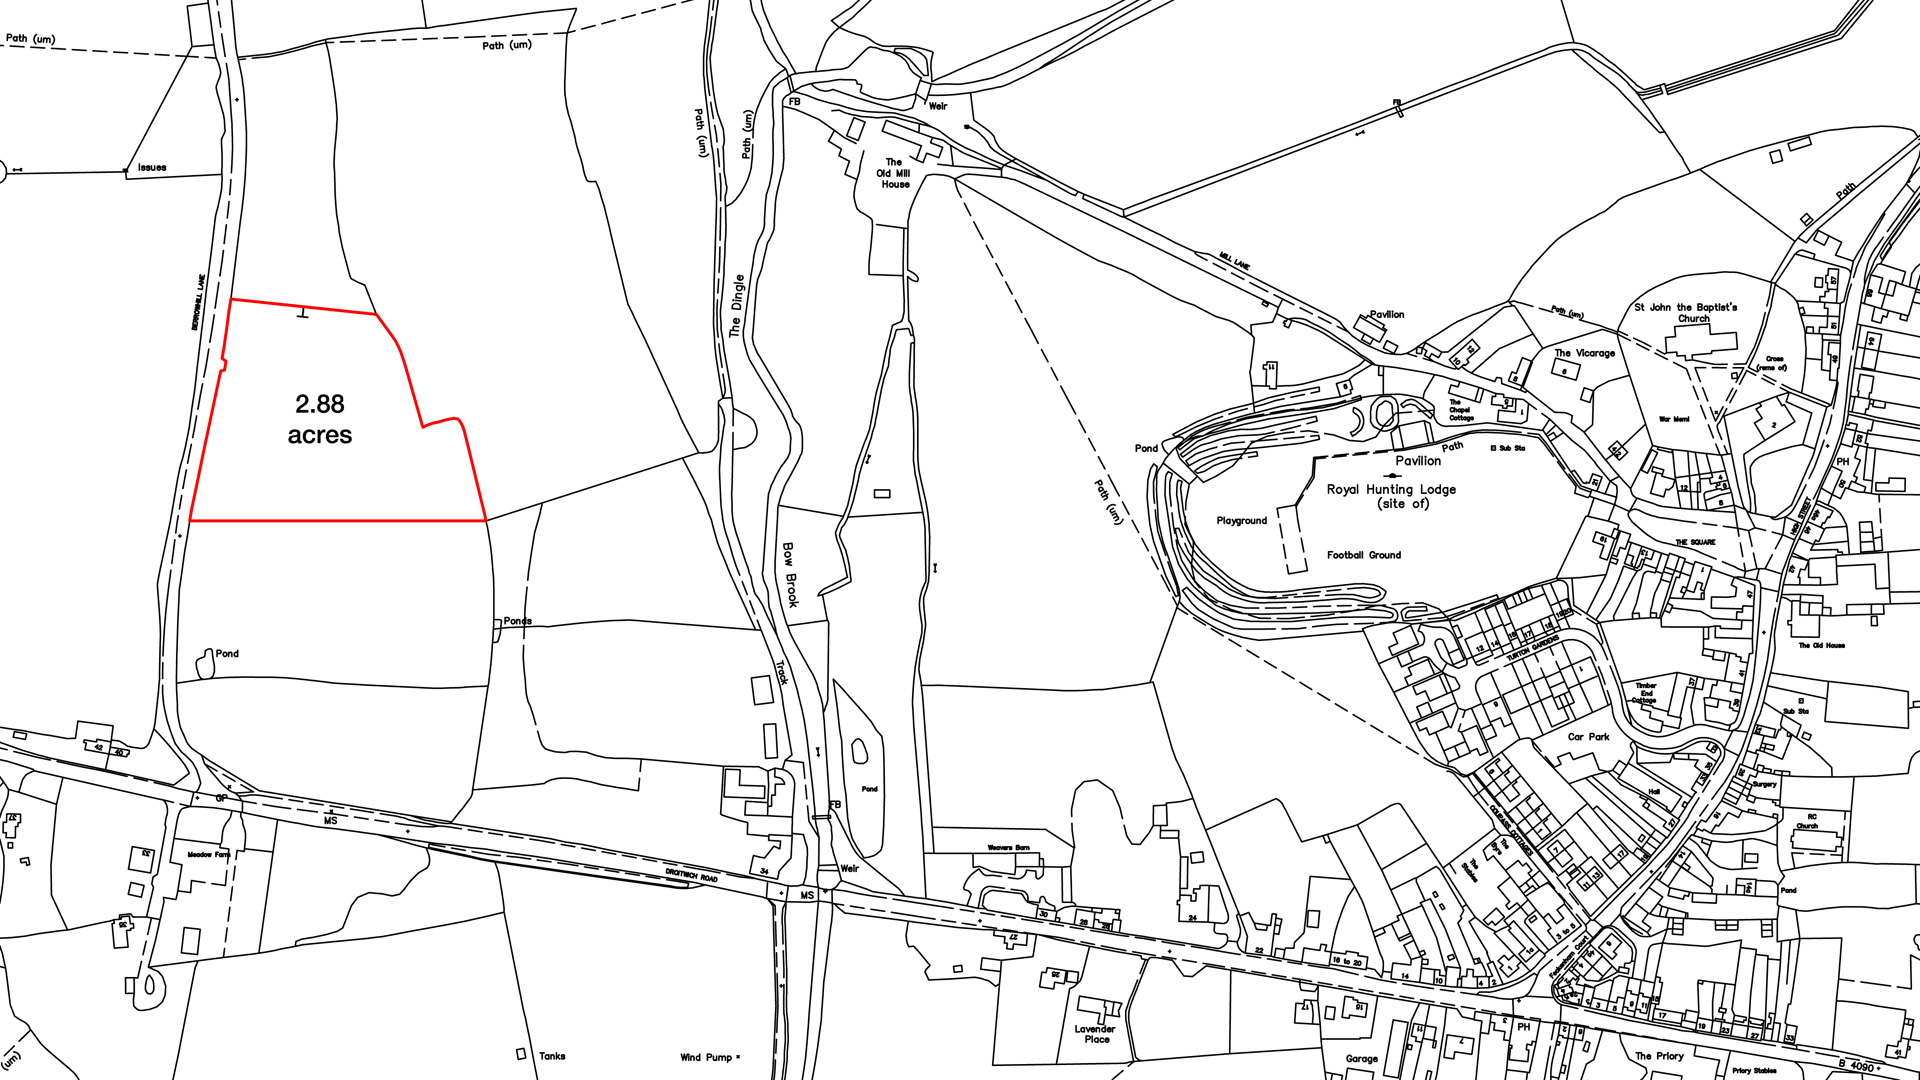 Land for sale in Feckenham, Redditch site plan